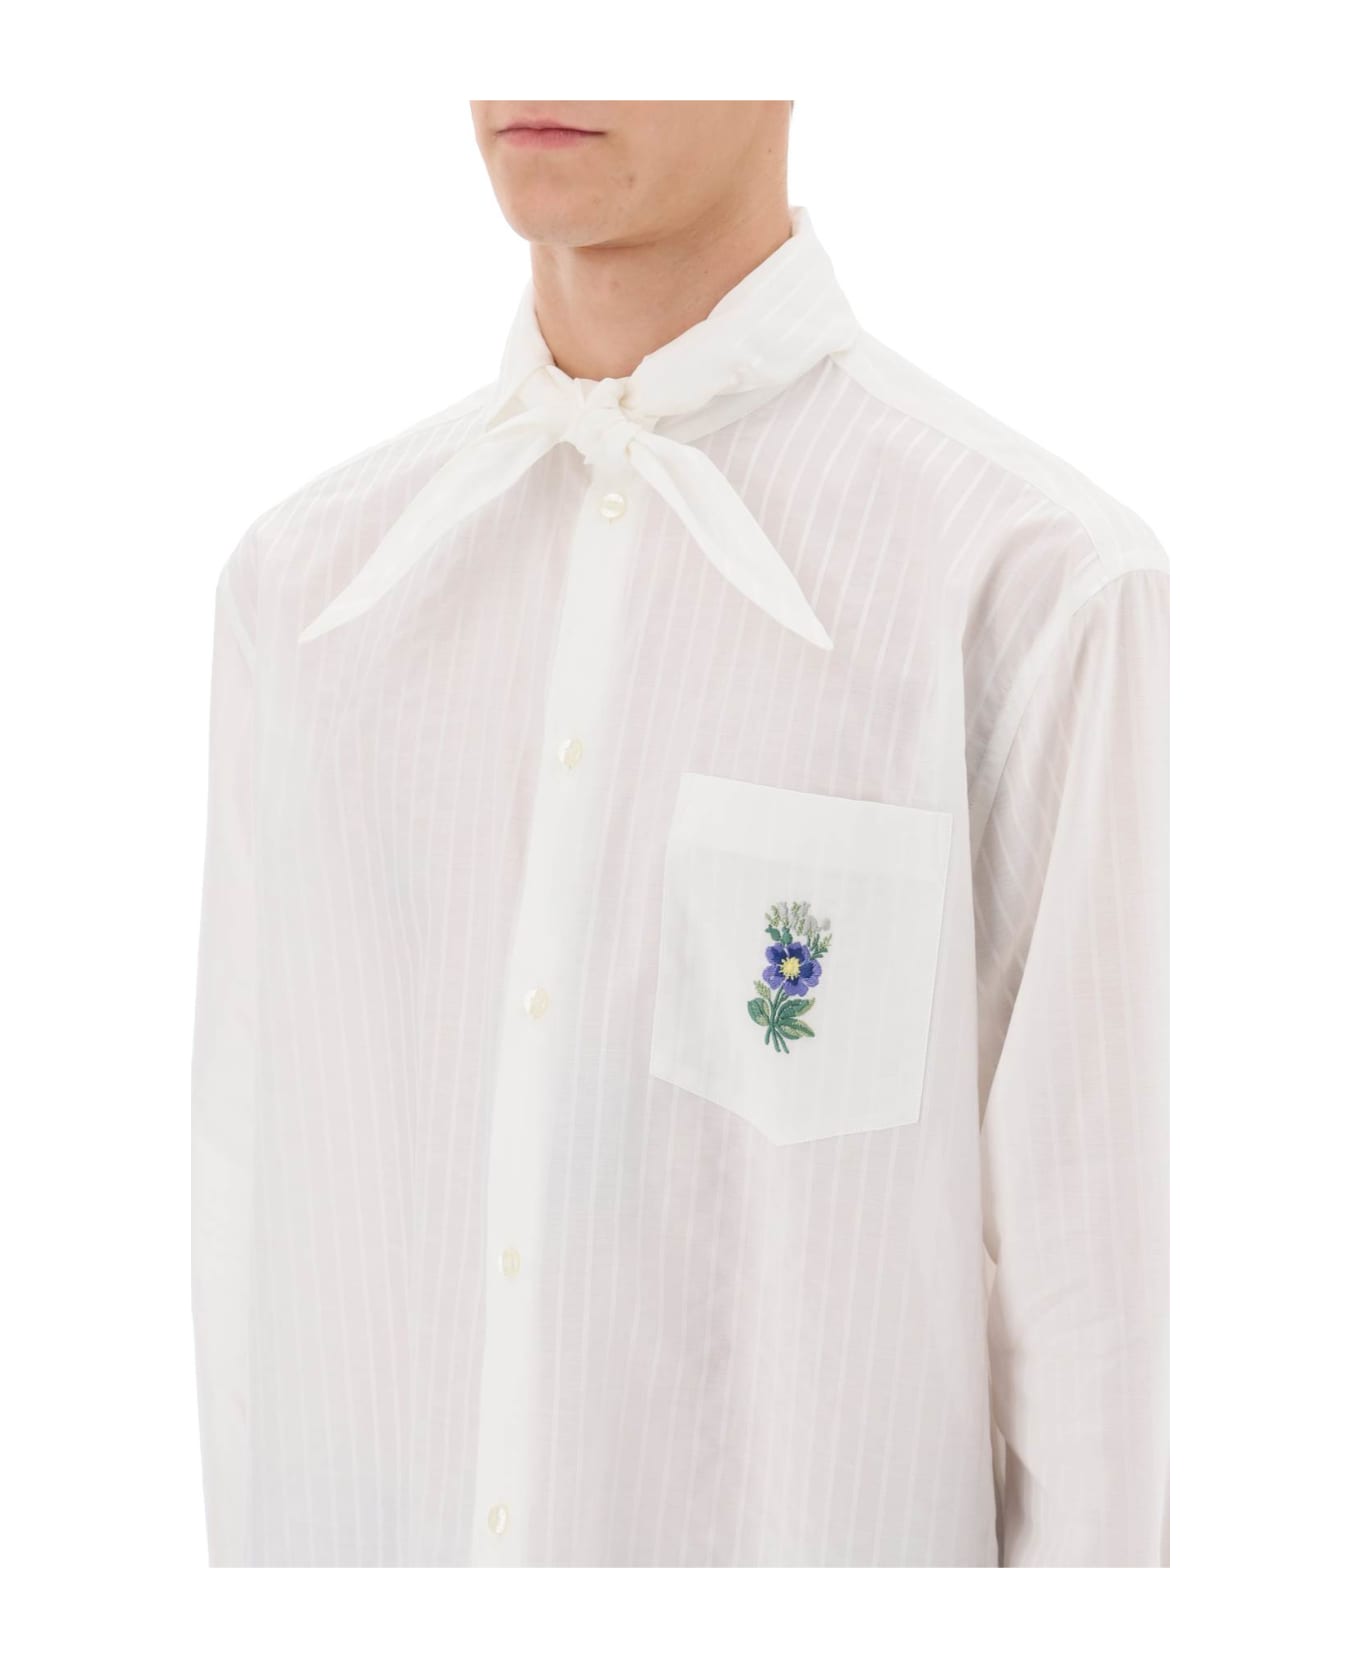 Etro Striped Shirt With Scarf Collar - WHITE (White)